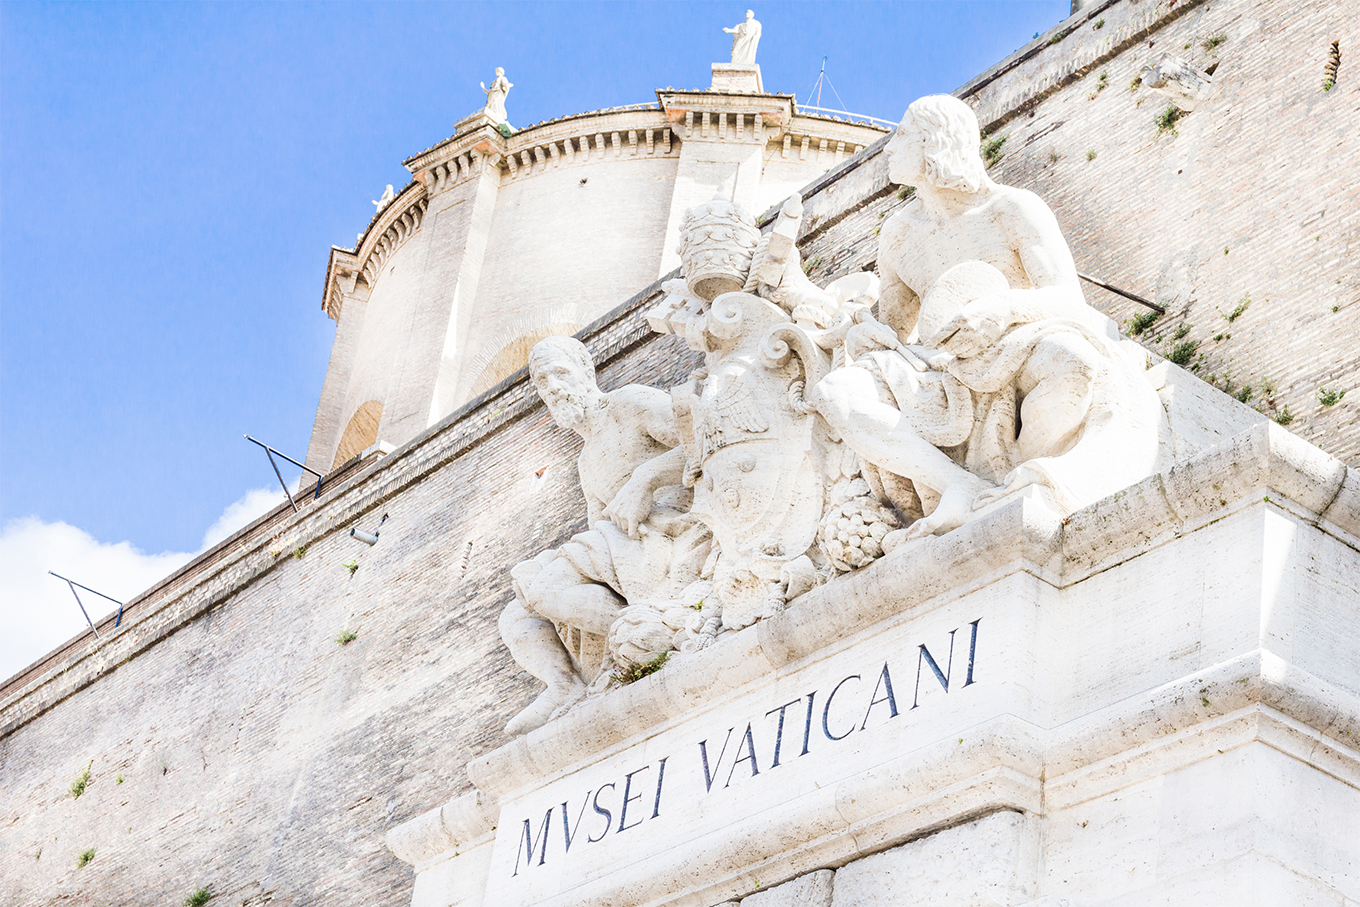 Барбара Ятта: главный вход в Музеи Ватикана как символ открытости